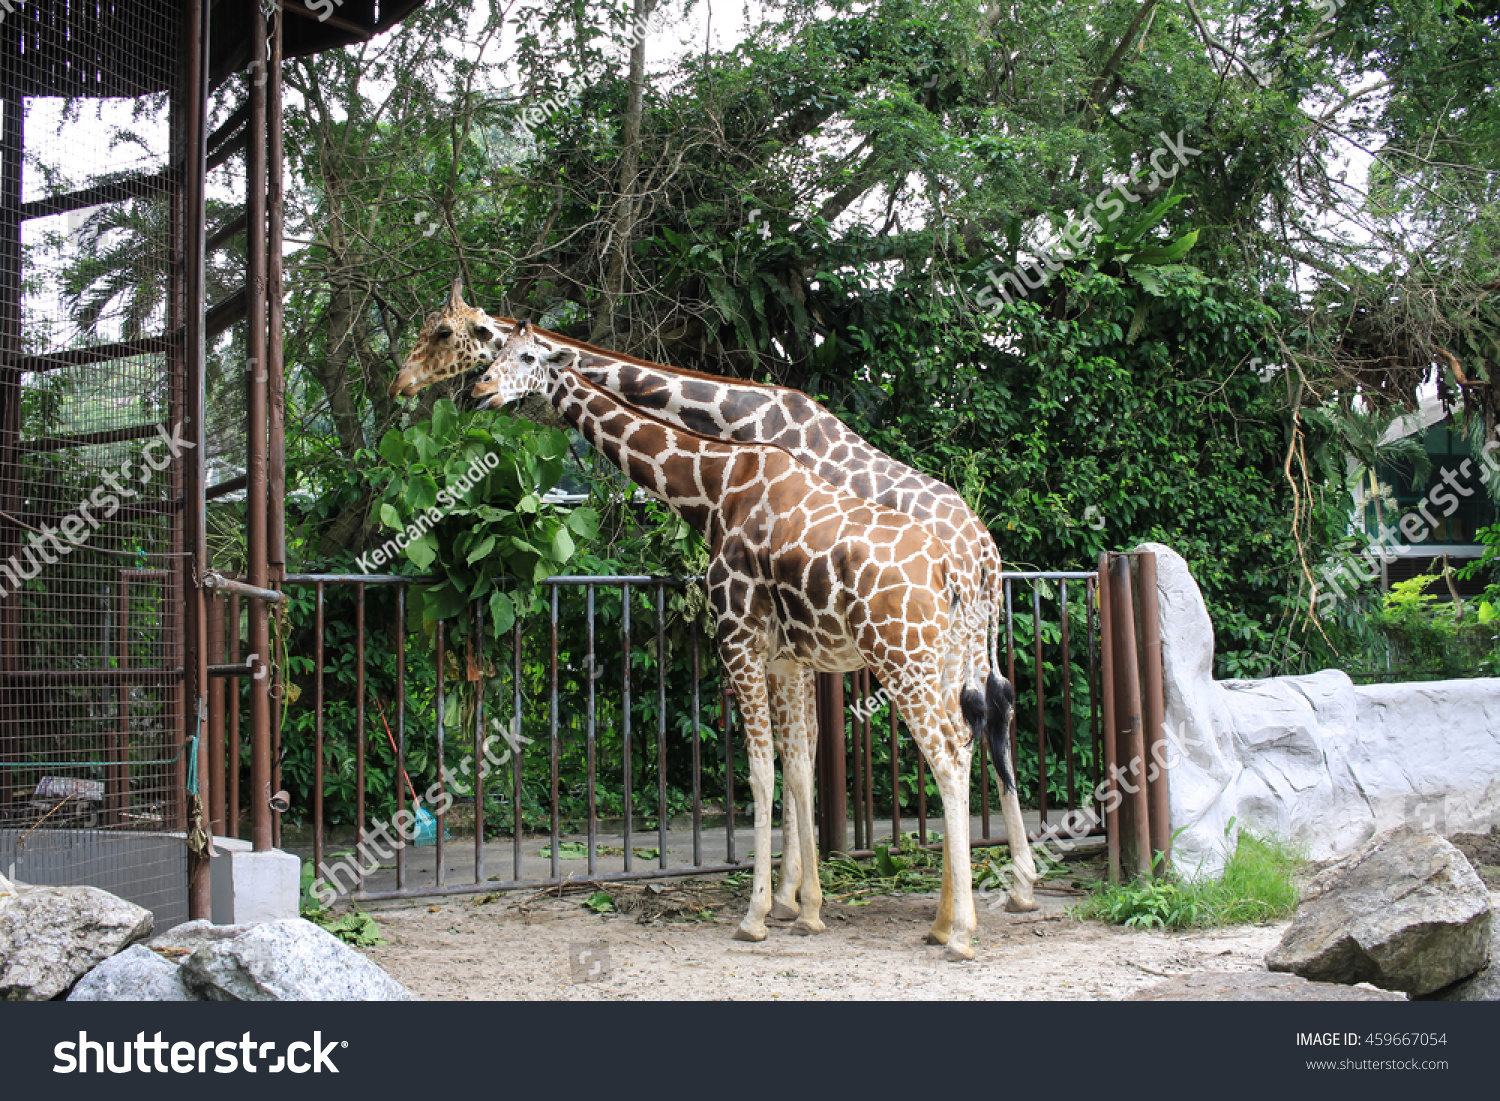 Giraffe in malay